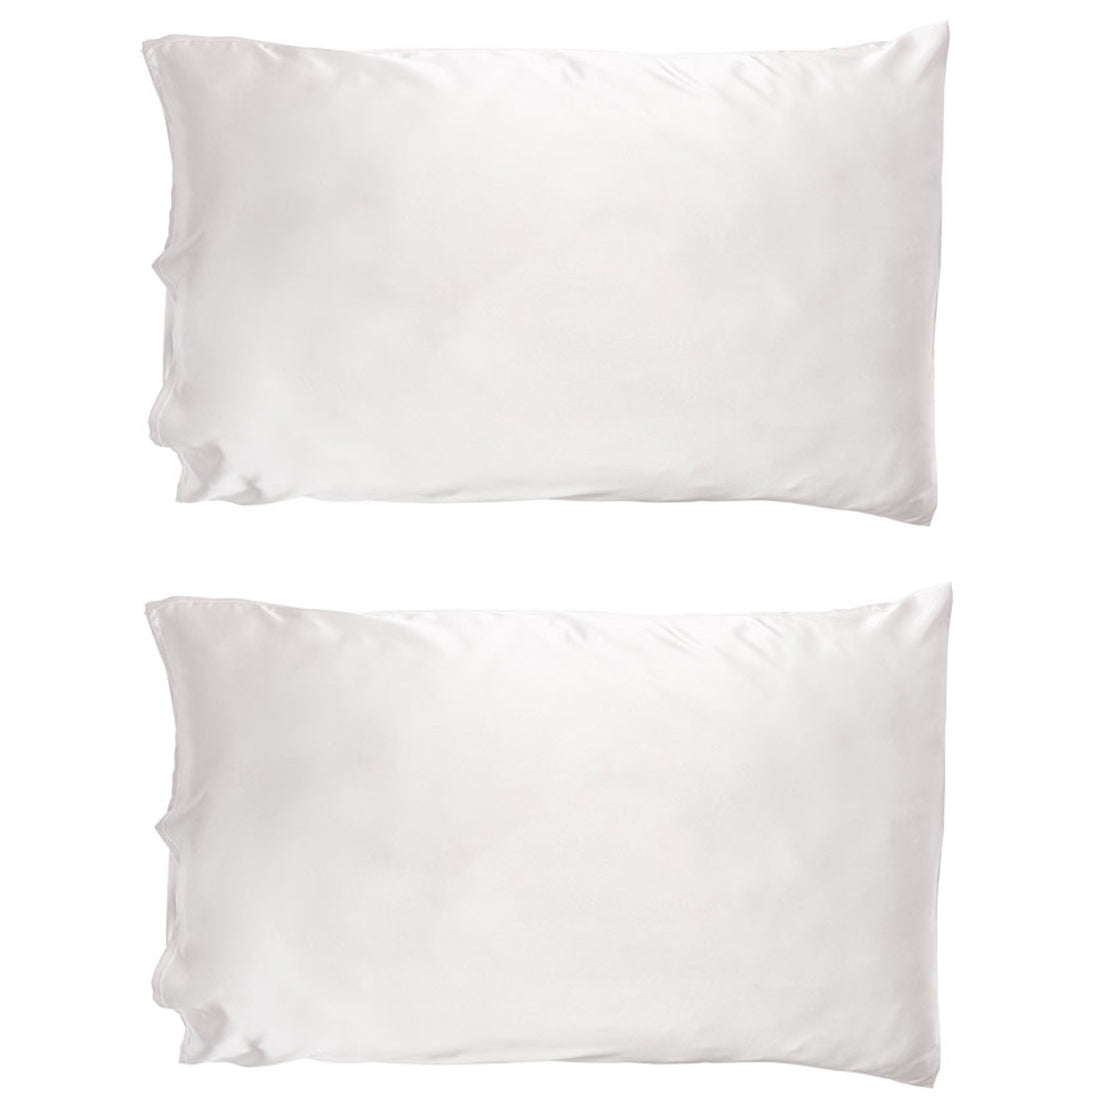 So Eco Satin Pillow Case  Double Pack 50 cm x 75 cm 